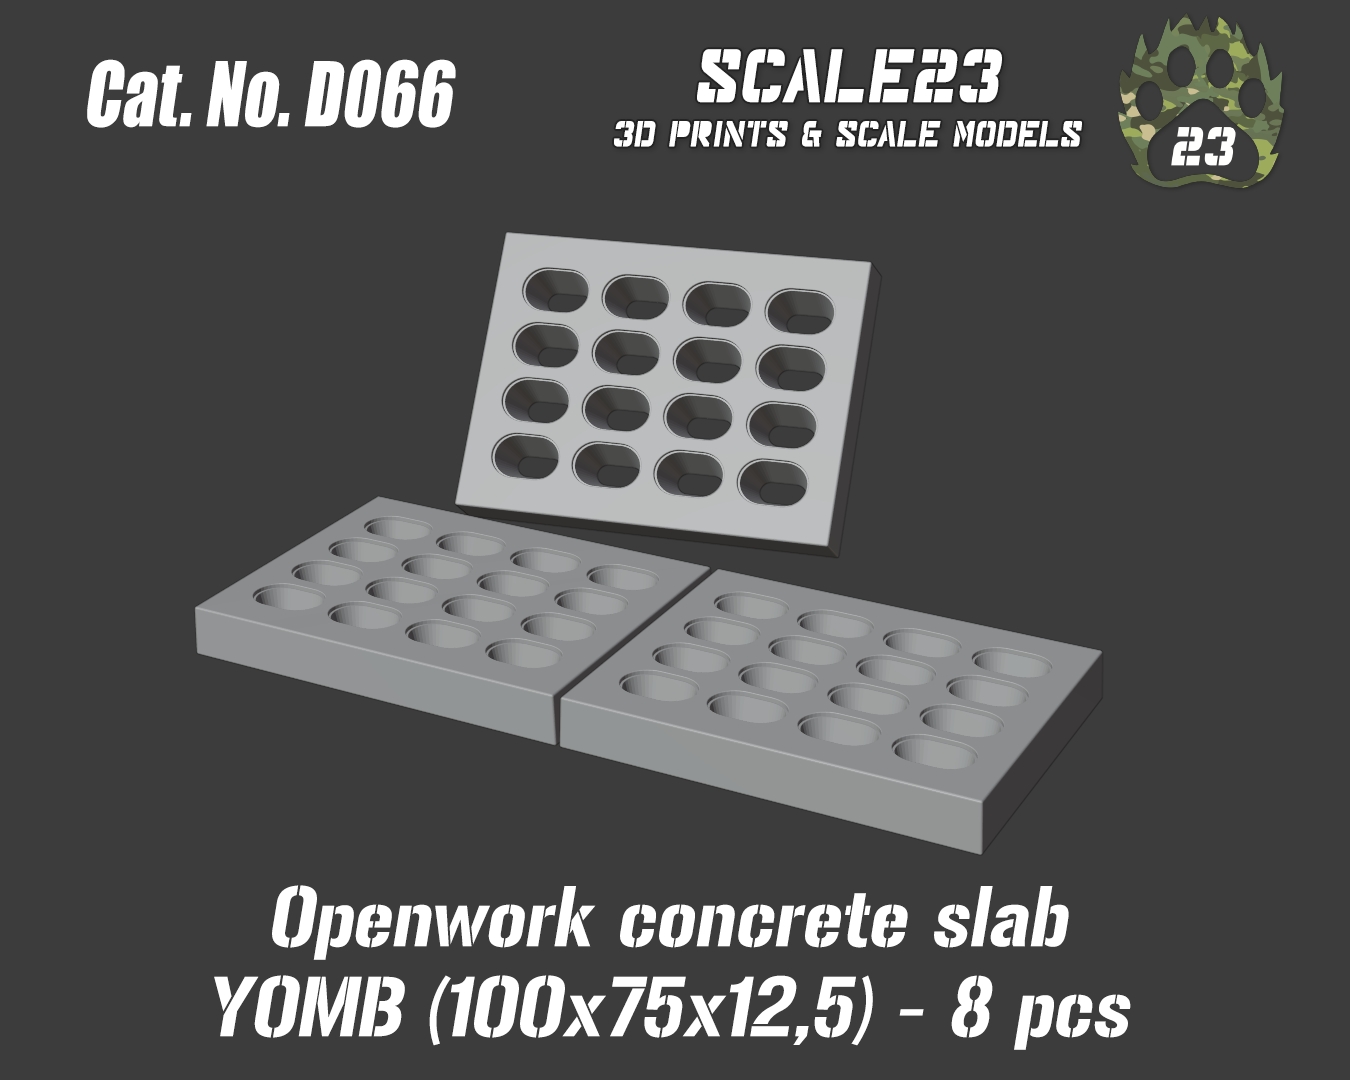 Openwork concrete slab YOMB 100x75x12,5 (8pc)